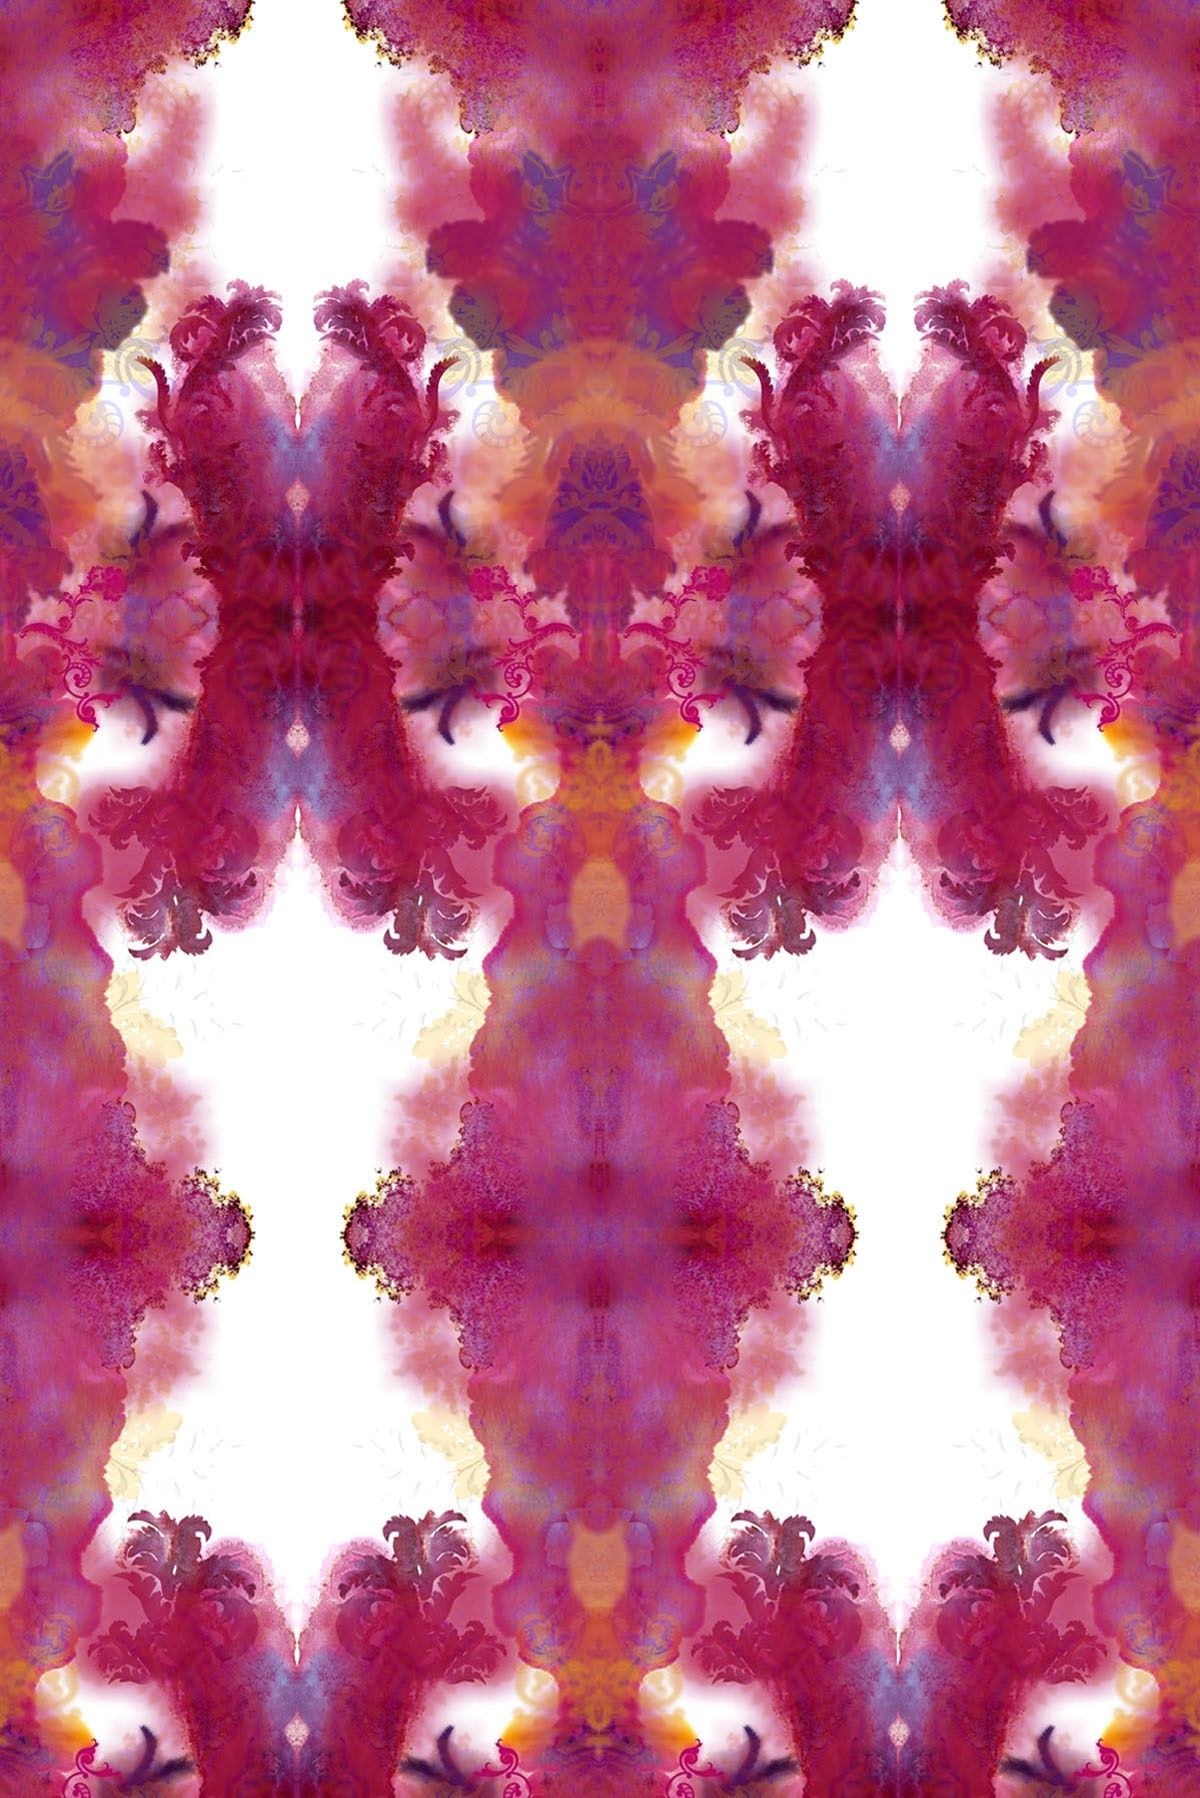 besties wallpaper,purple,symmetry,red,pattern,pink